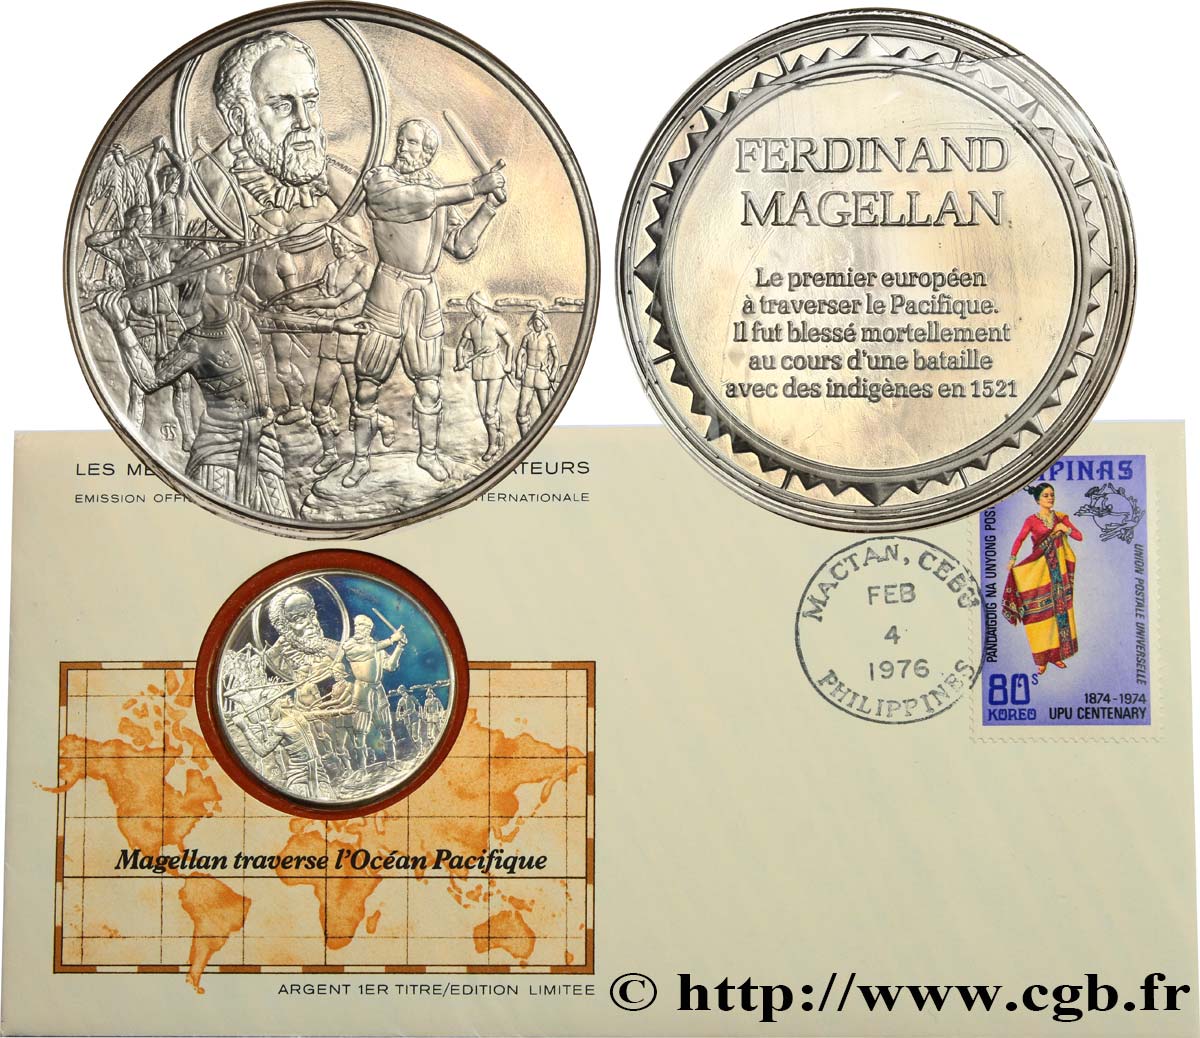 THE GREAT EXPLORERS  MEDALS Enveloppe “Timbre médaille”, Magellan traverse l’Océan Pacifique SC